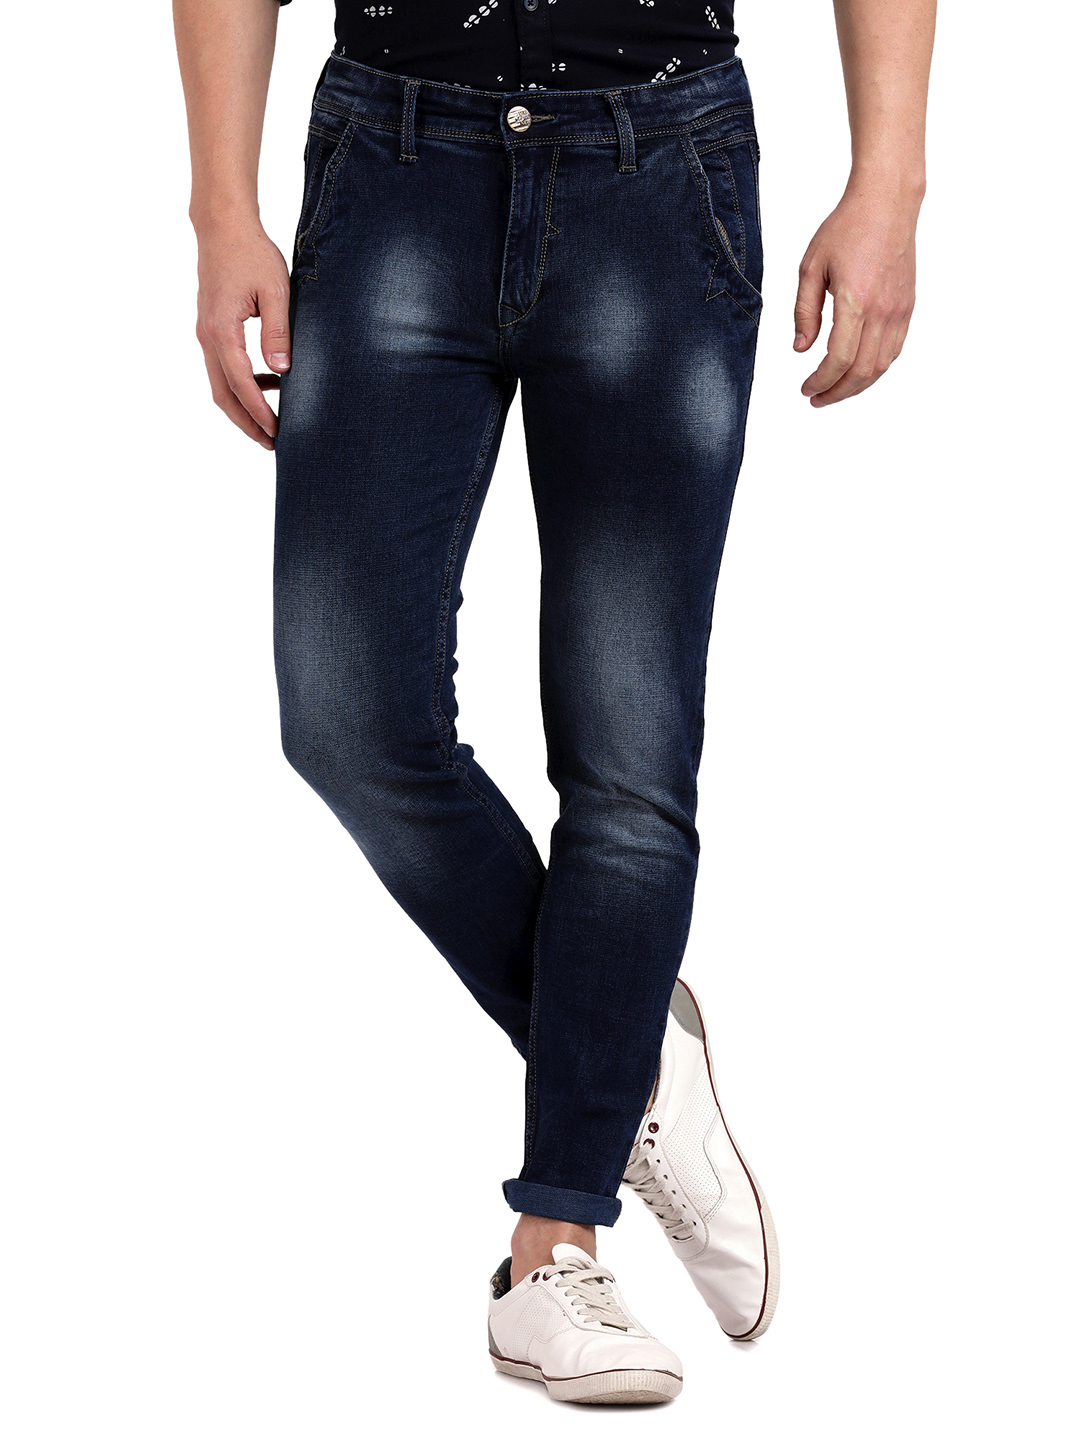 View Jeans - Trendyfit